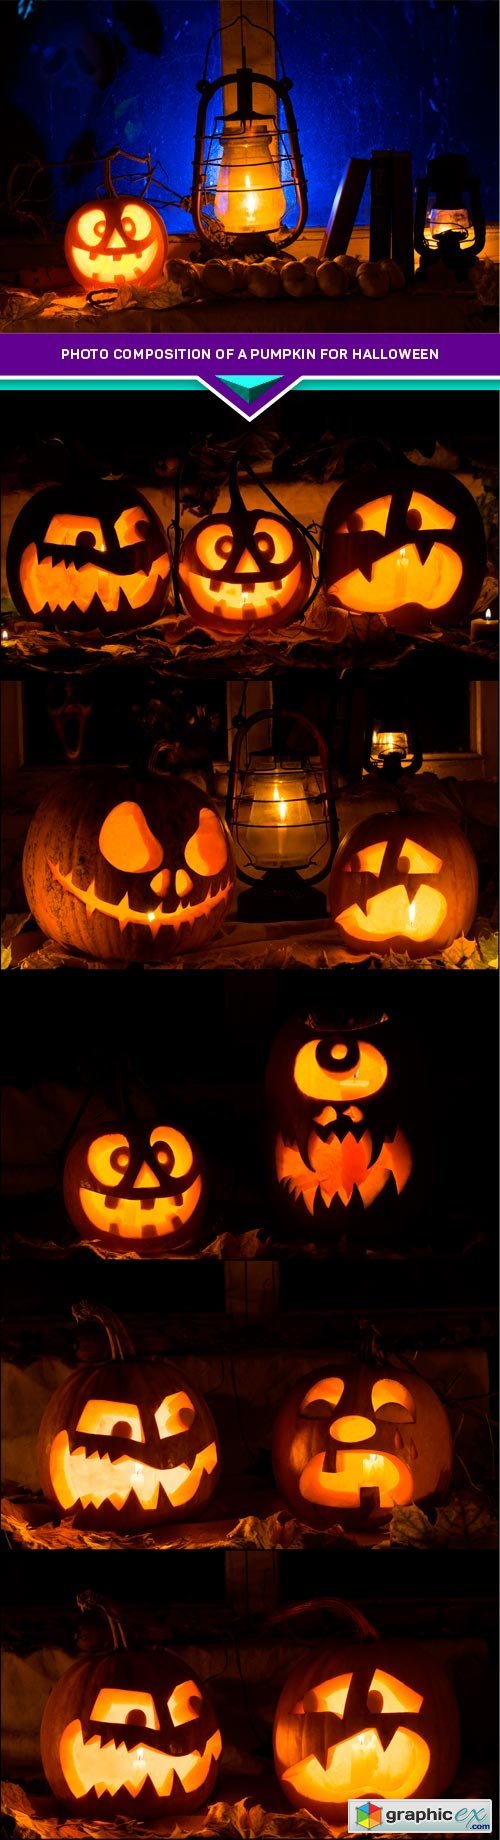 Photo composition of a pumpkin for Halloween 6x JPEG